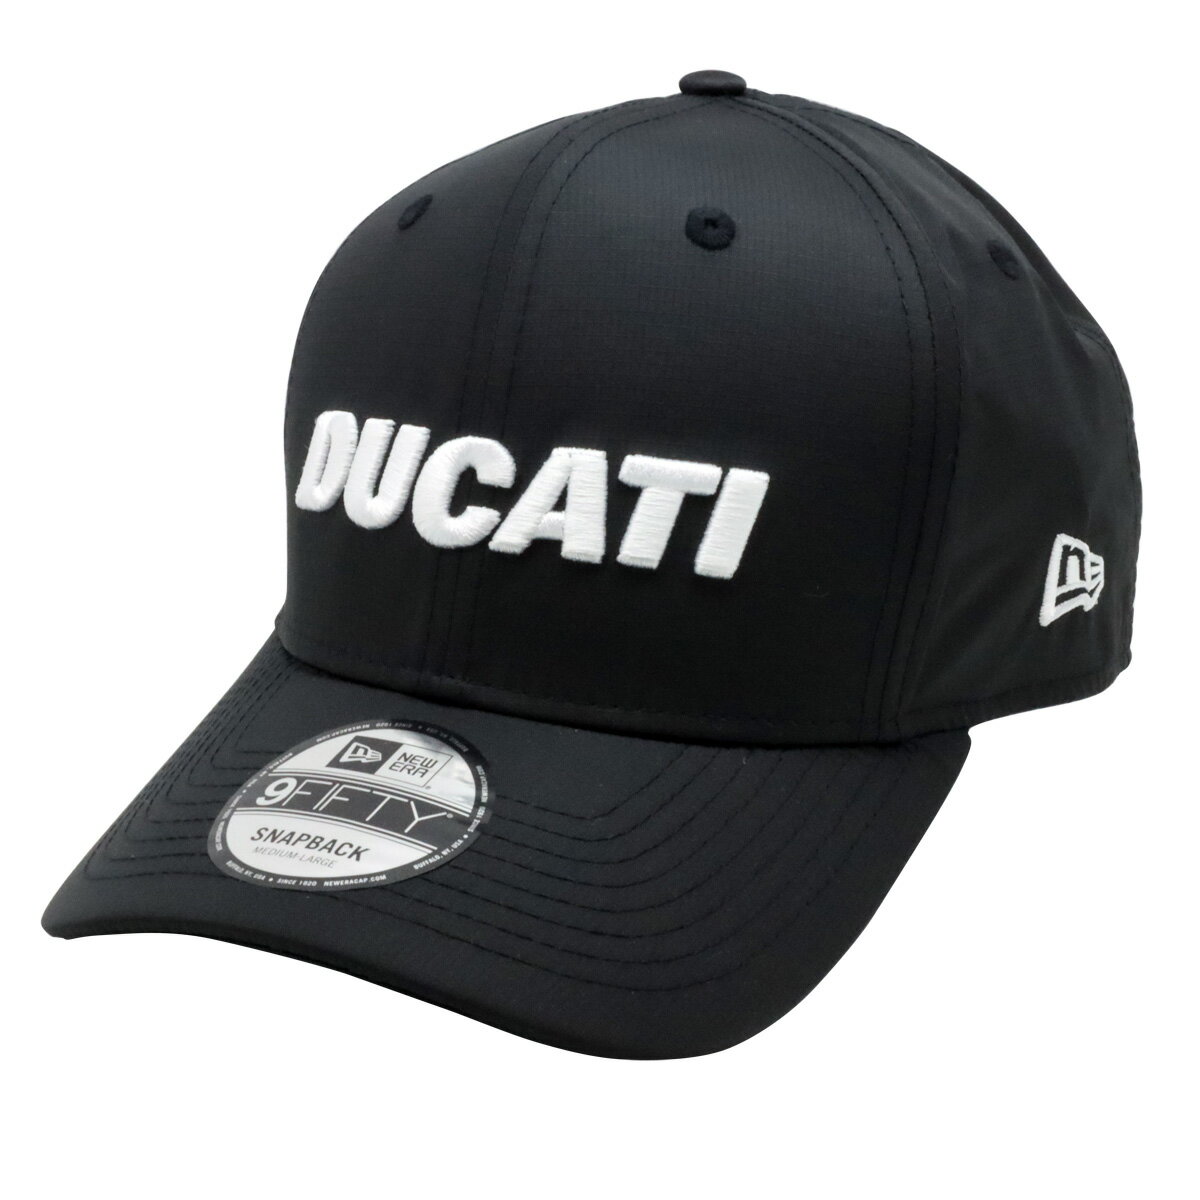 2024 ドゥカティ DUCATI NewEra 9FIFTY リップストップ プレカーブ キャップ ブラック 帽子